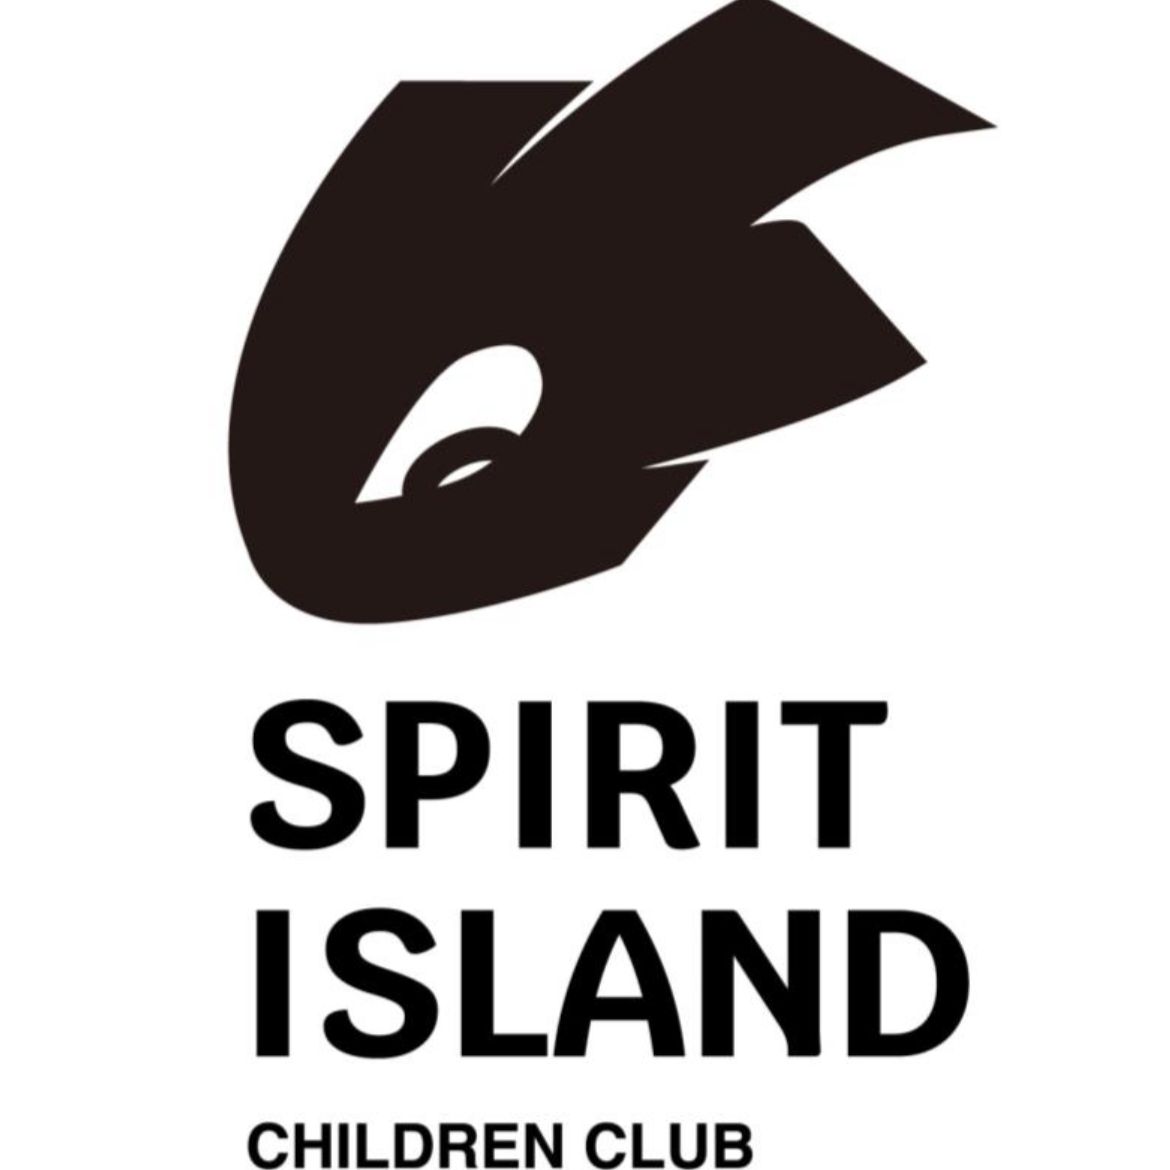 Spirit island children club logo